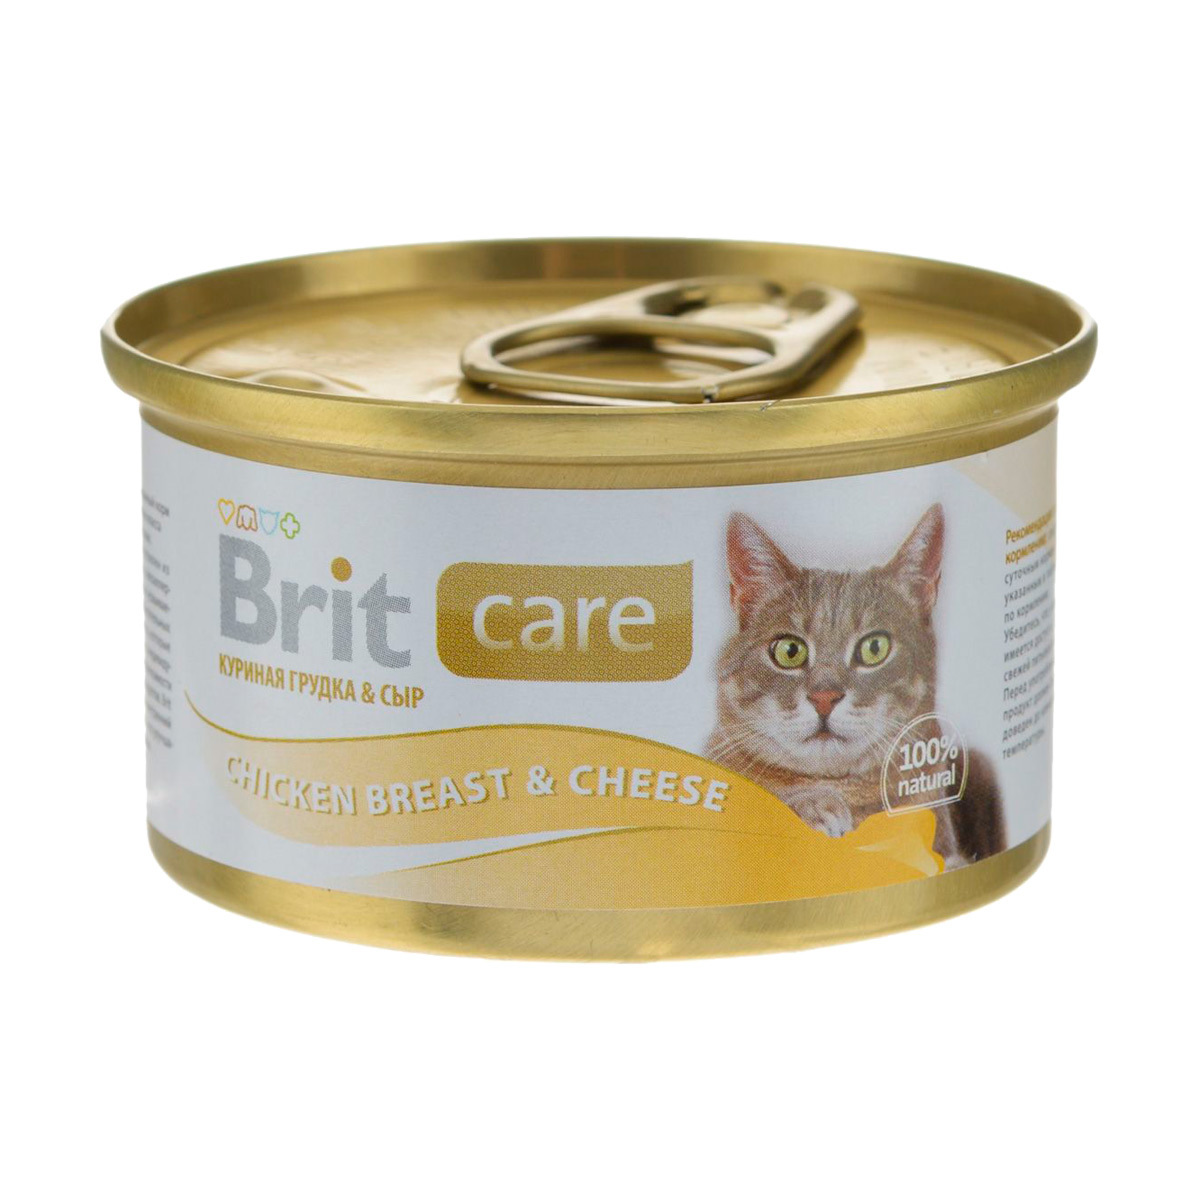 Care Cat консервы для кошек, с куриной грудкой и сыром, Brit